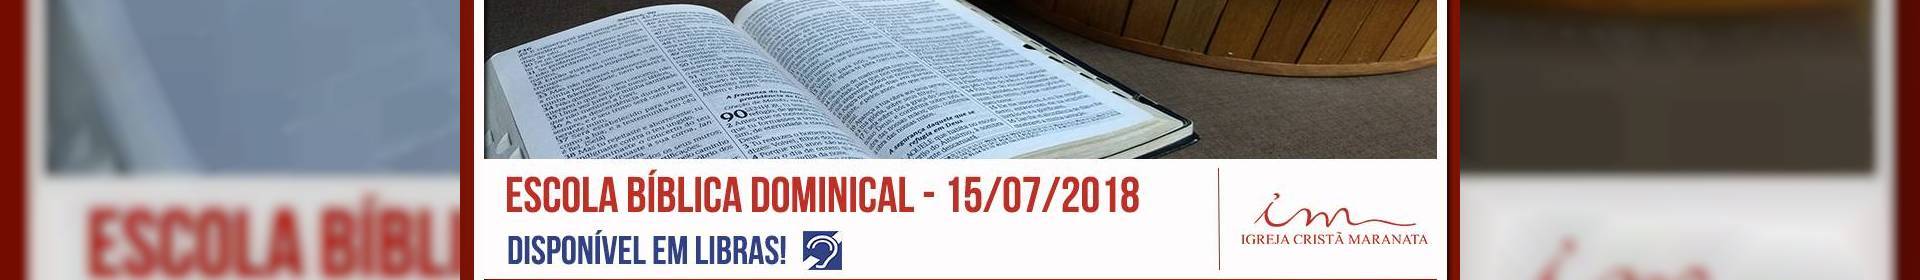 Escola Bíblica Dominical - 15/07/2018